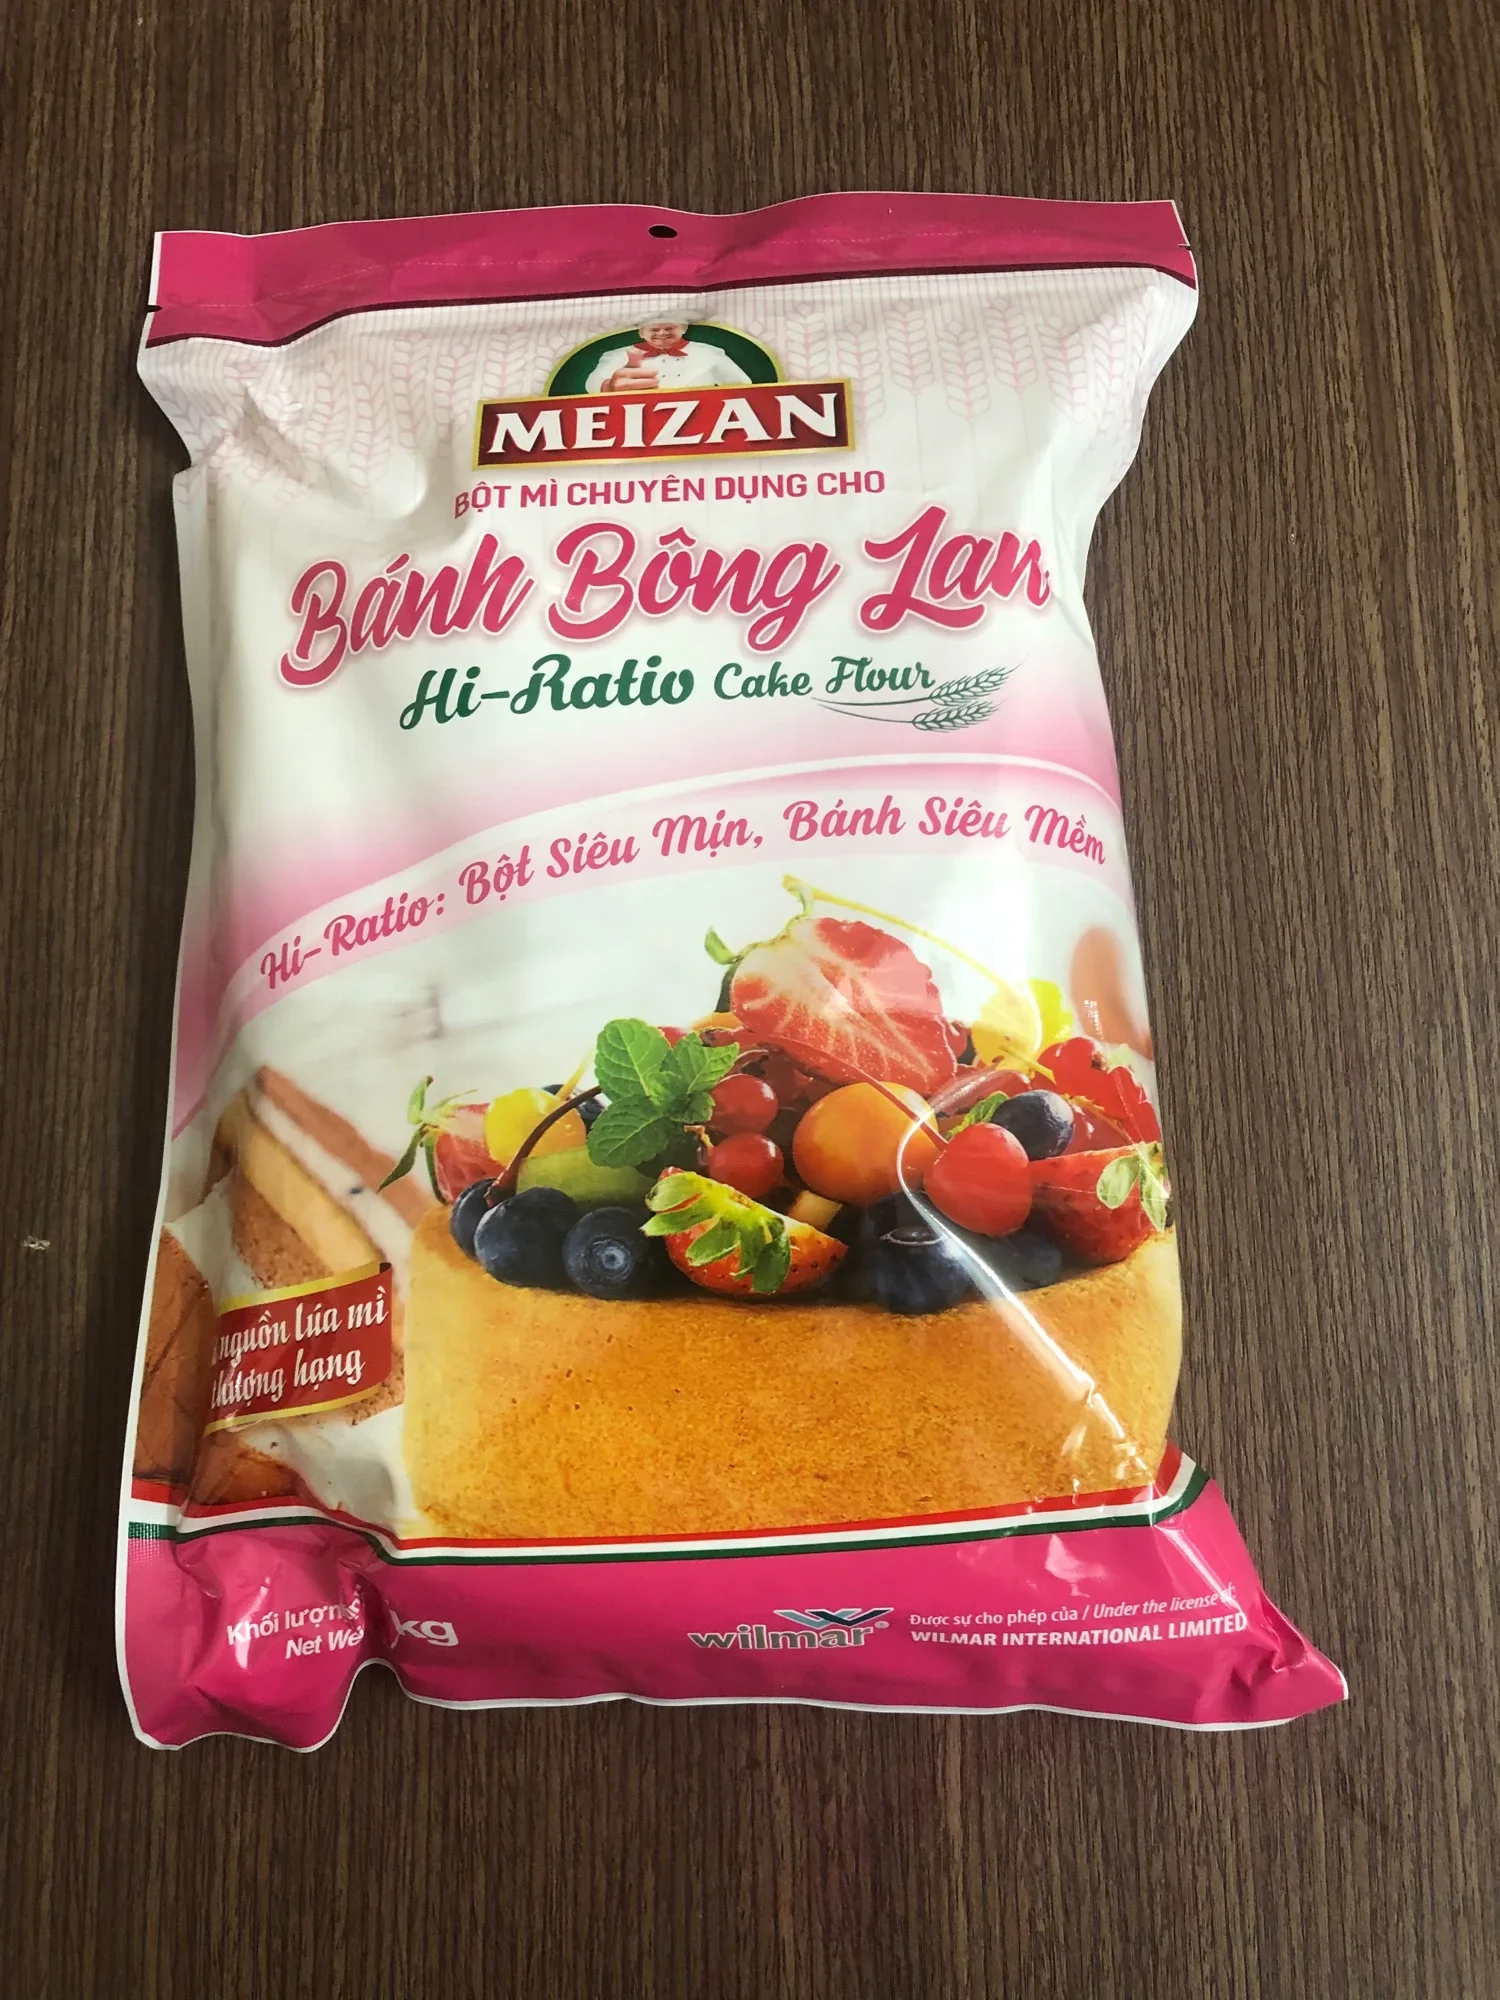 MH( Sales 9.9) 1kg Bột làm bánh bông Lan Meizan